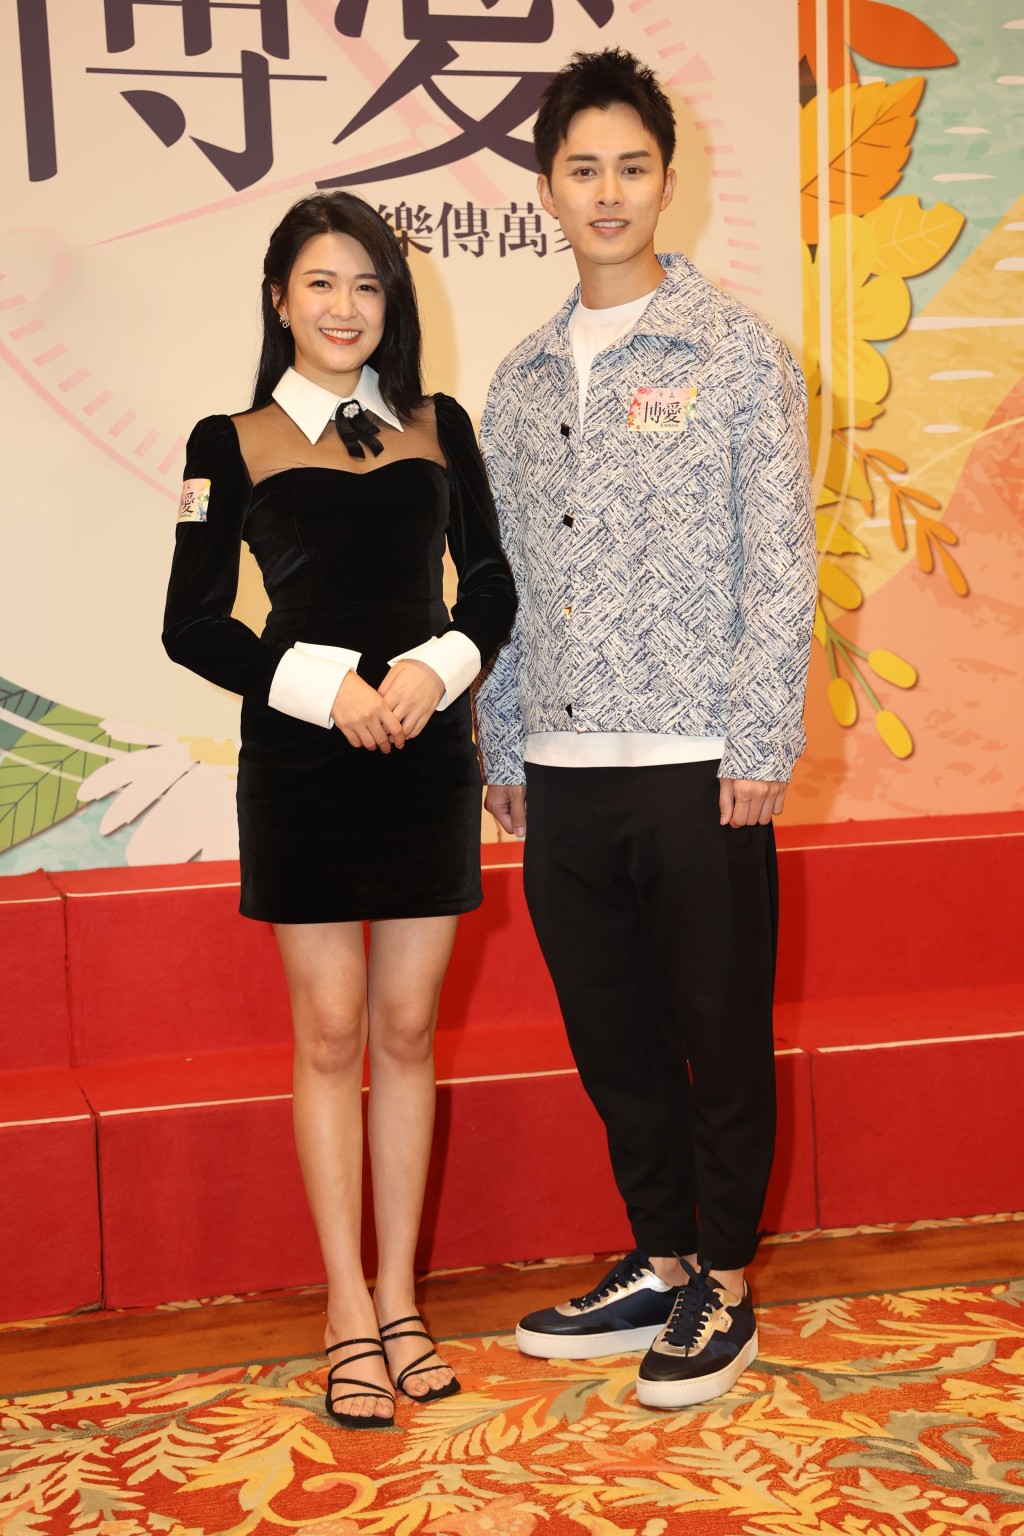 江嘉敏和何广沛都有份在《博爱欢乐传万家》中表演。